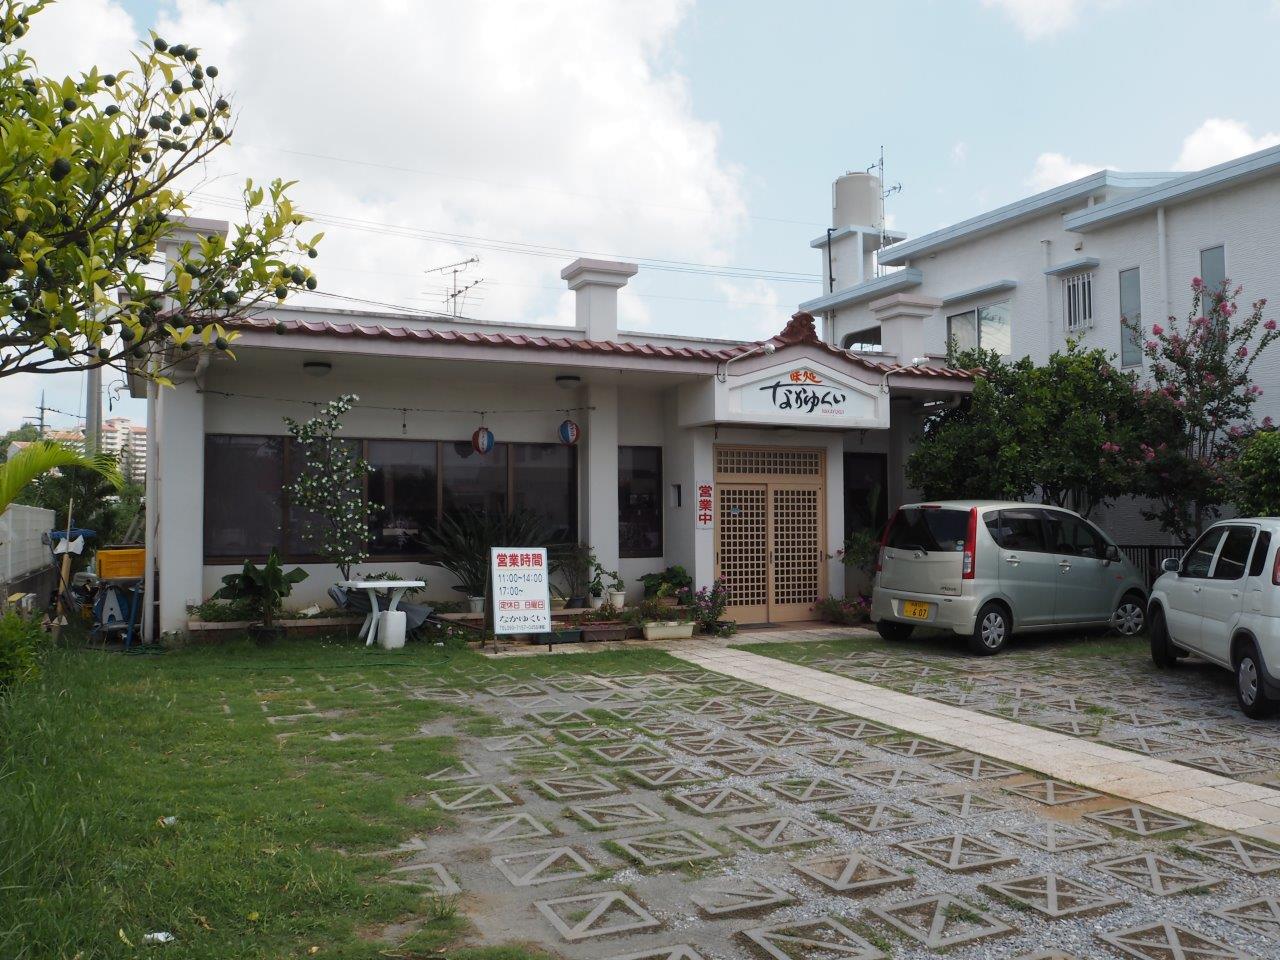 名護市宇茂佐の森 味処なかゆくい 飲食店 Nagos Okinawa Web Magazine